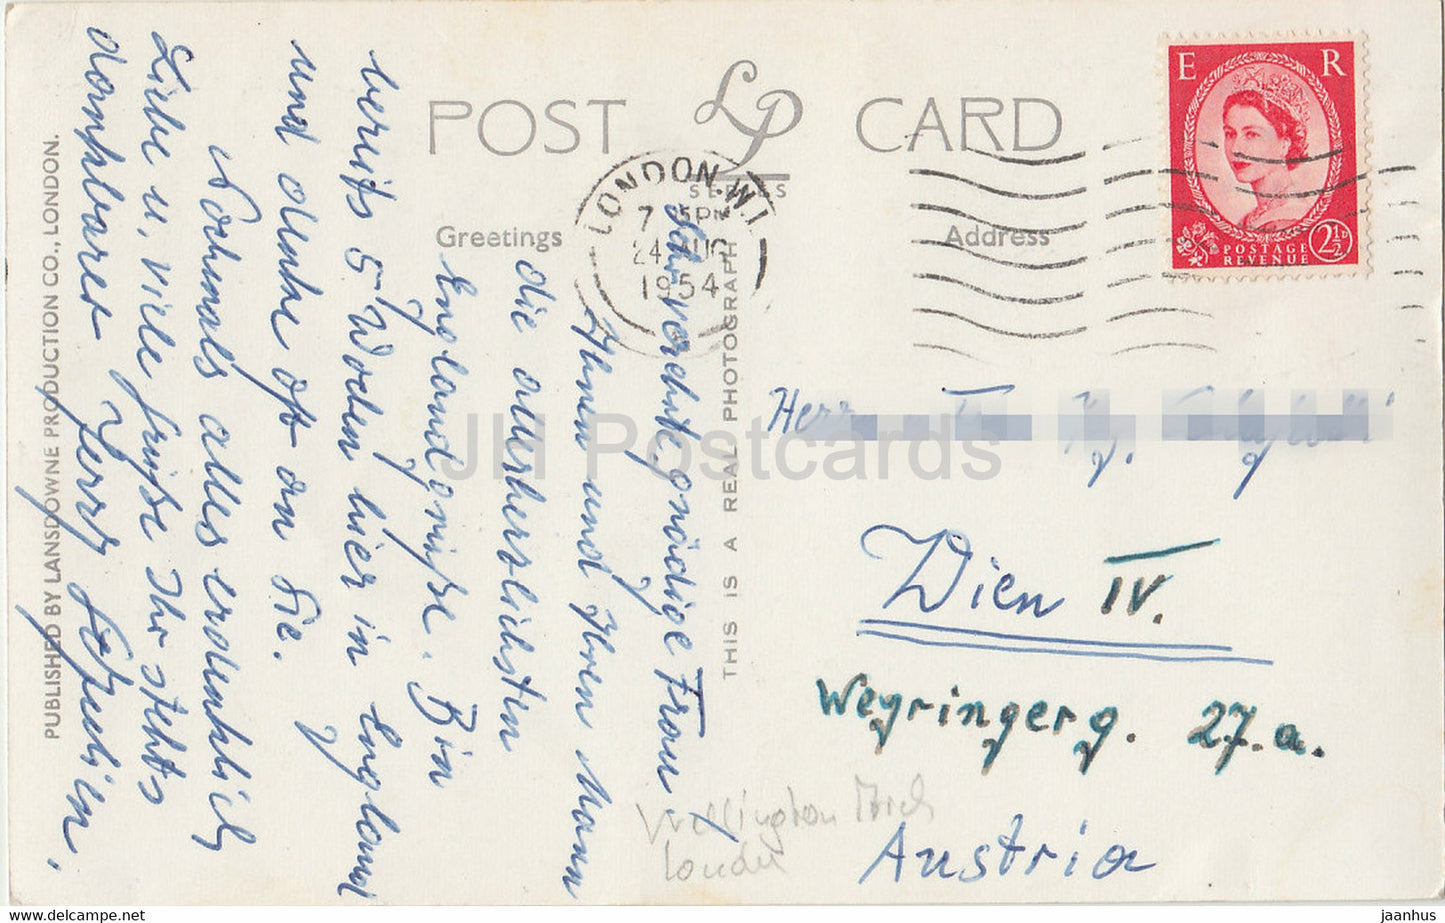 London – Wellington Arch und Piccadilly – Bus – alte Postkarte – 1954 – Vereinigtes Königreich – England – gebraucht